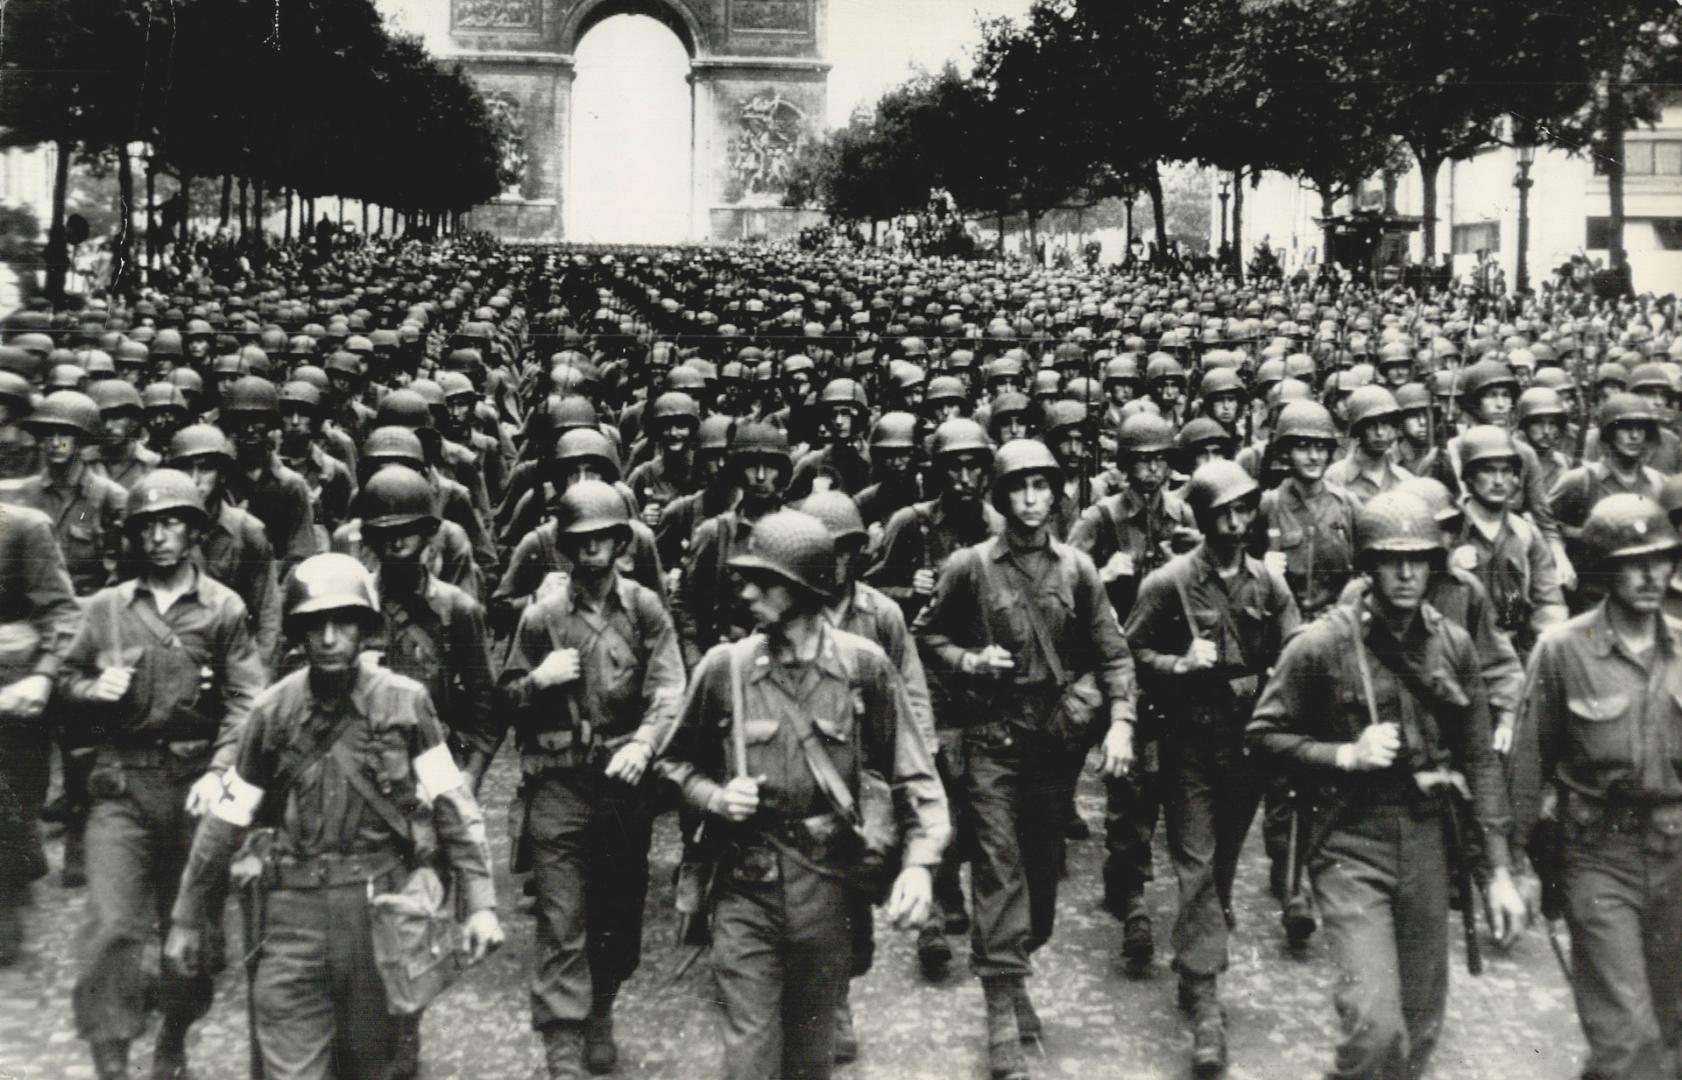 A massive dictation event took over the iconic Champs-Élysées boulevard in  Paris : NPR